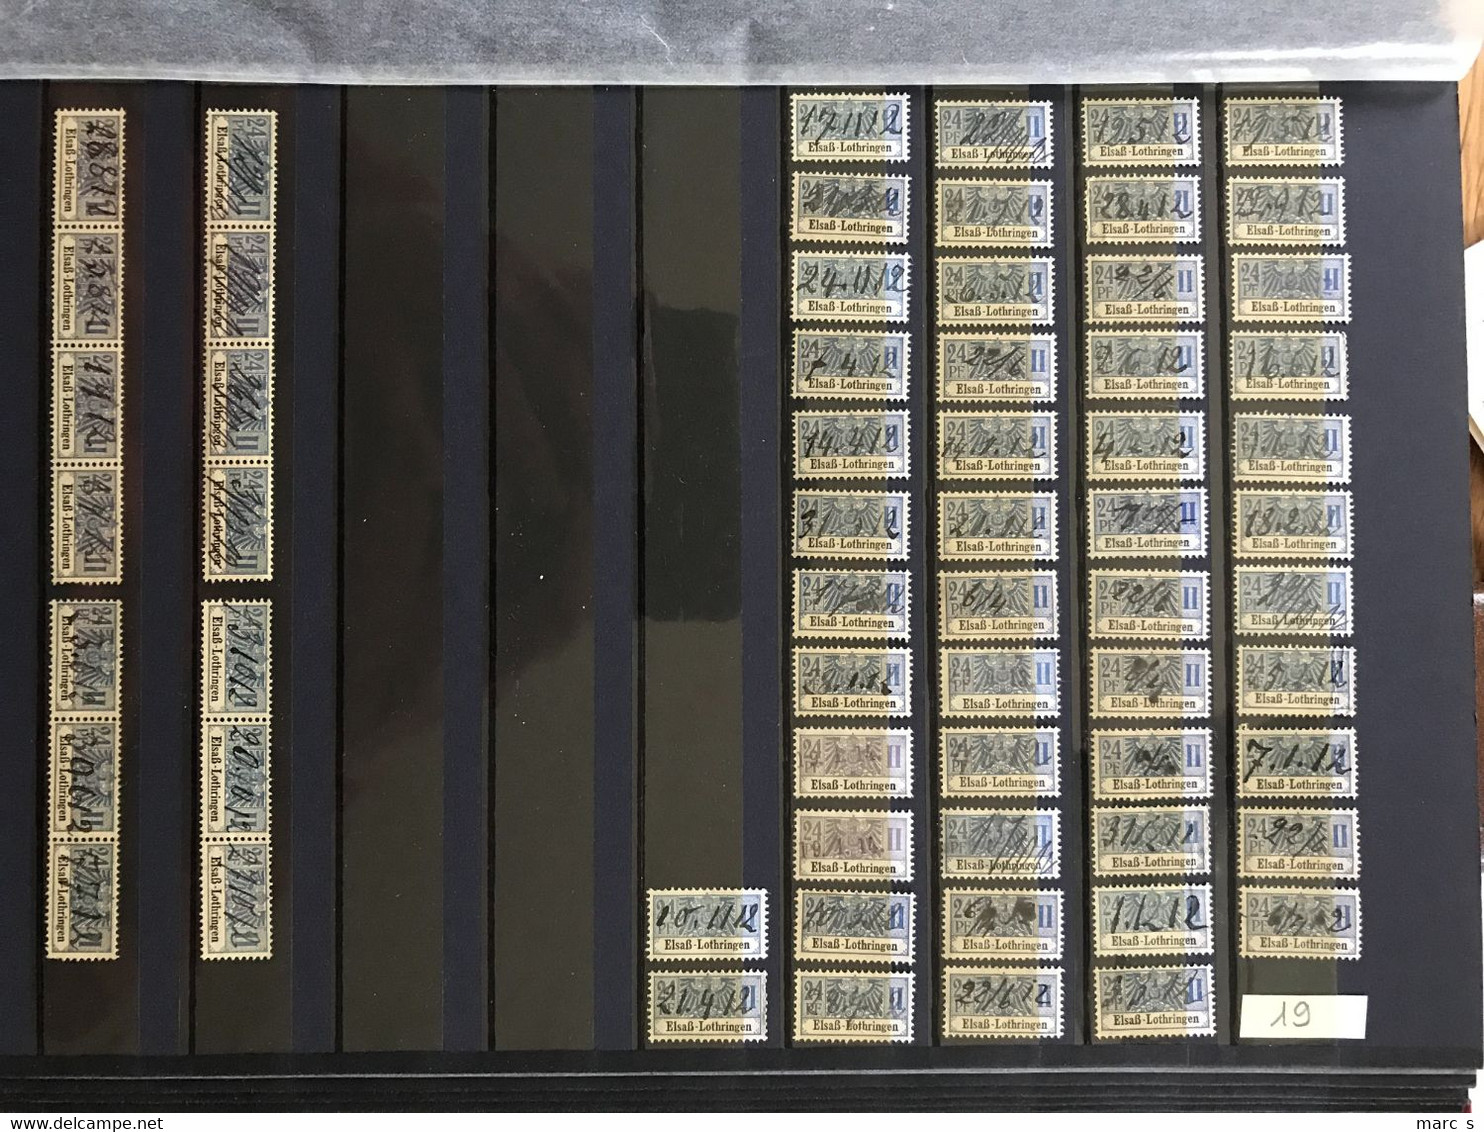 COLLECTION - SOCIO POSTAUX ALSACE LORRAINE 1891 - près de 1.000 timbres classés